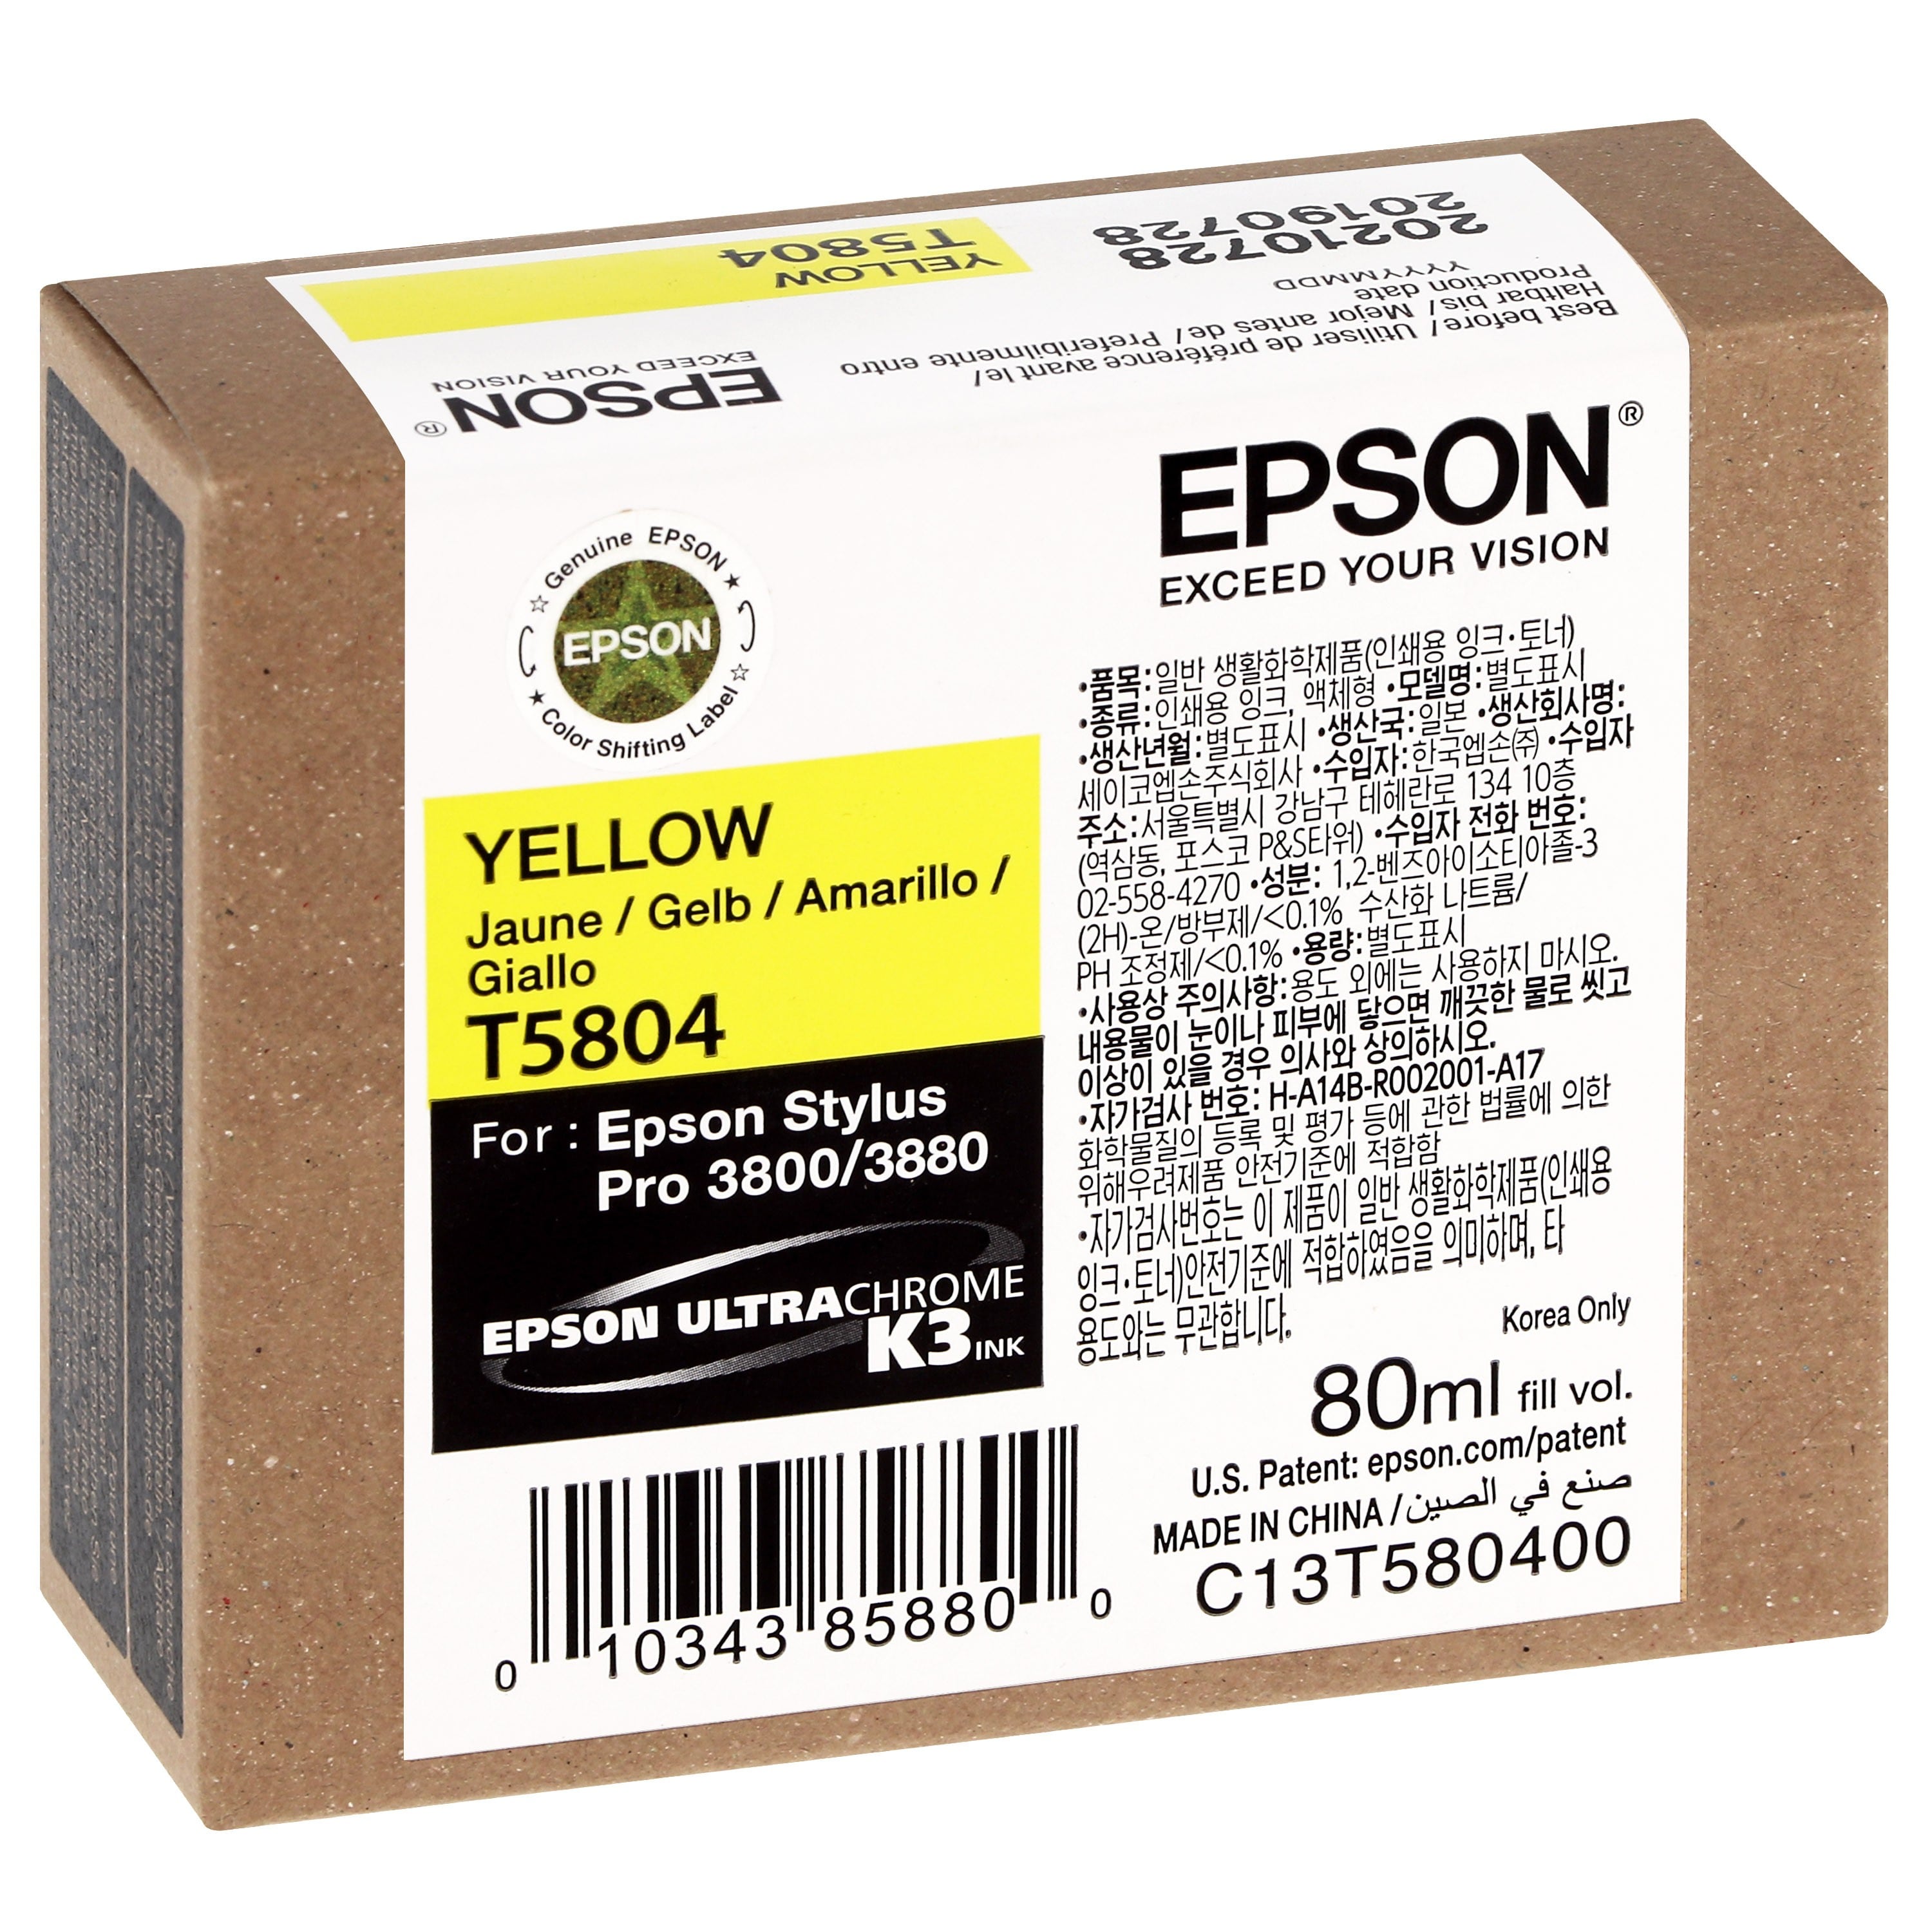 EPSON - Cartouche d'encre traceur T5804 Pour imprimante 3800/3880 Jaune - 80ml